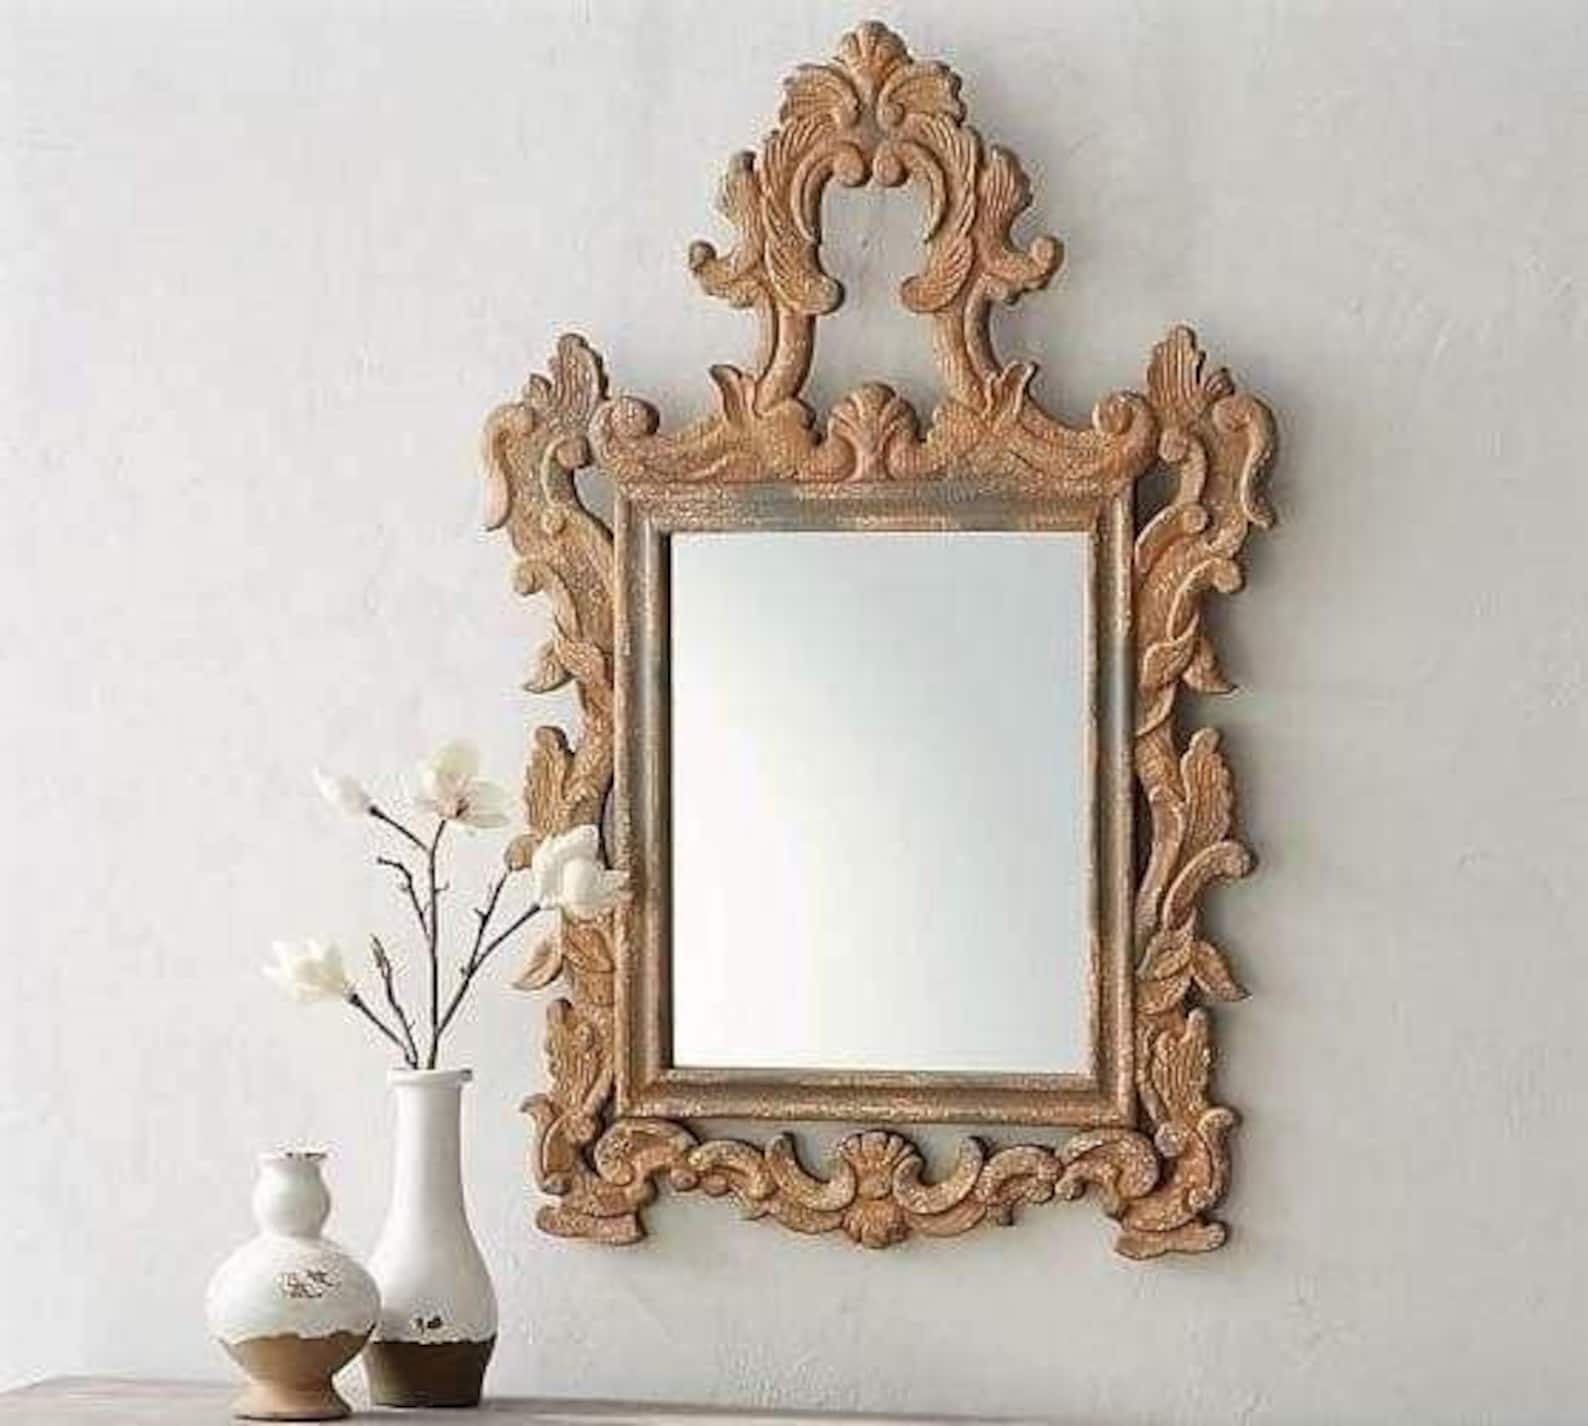 Зеркало резьба. Зеркало резное деревянное. Рамка для зеркала из дерева. Рама для зеркала из дерева. Зеркало в деревянной раме.